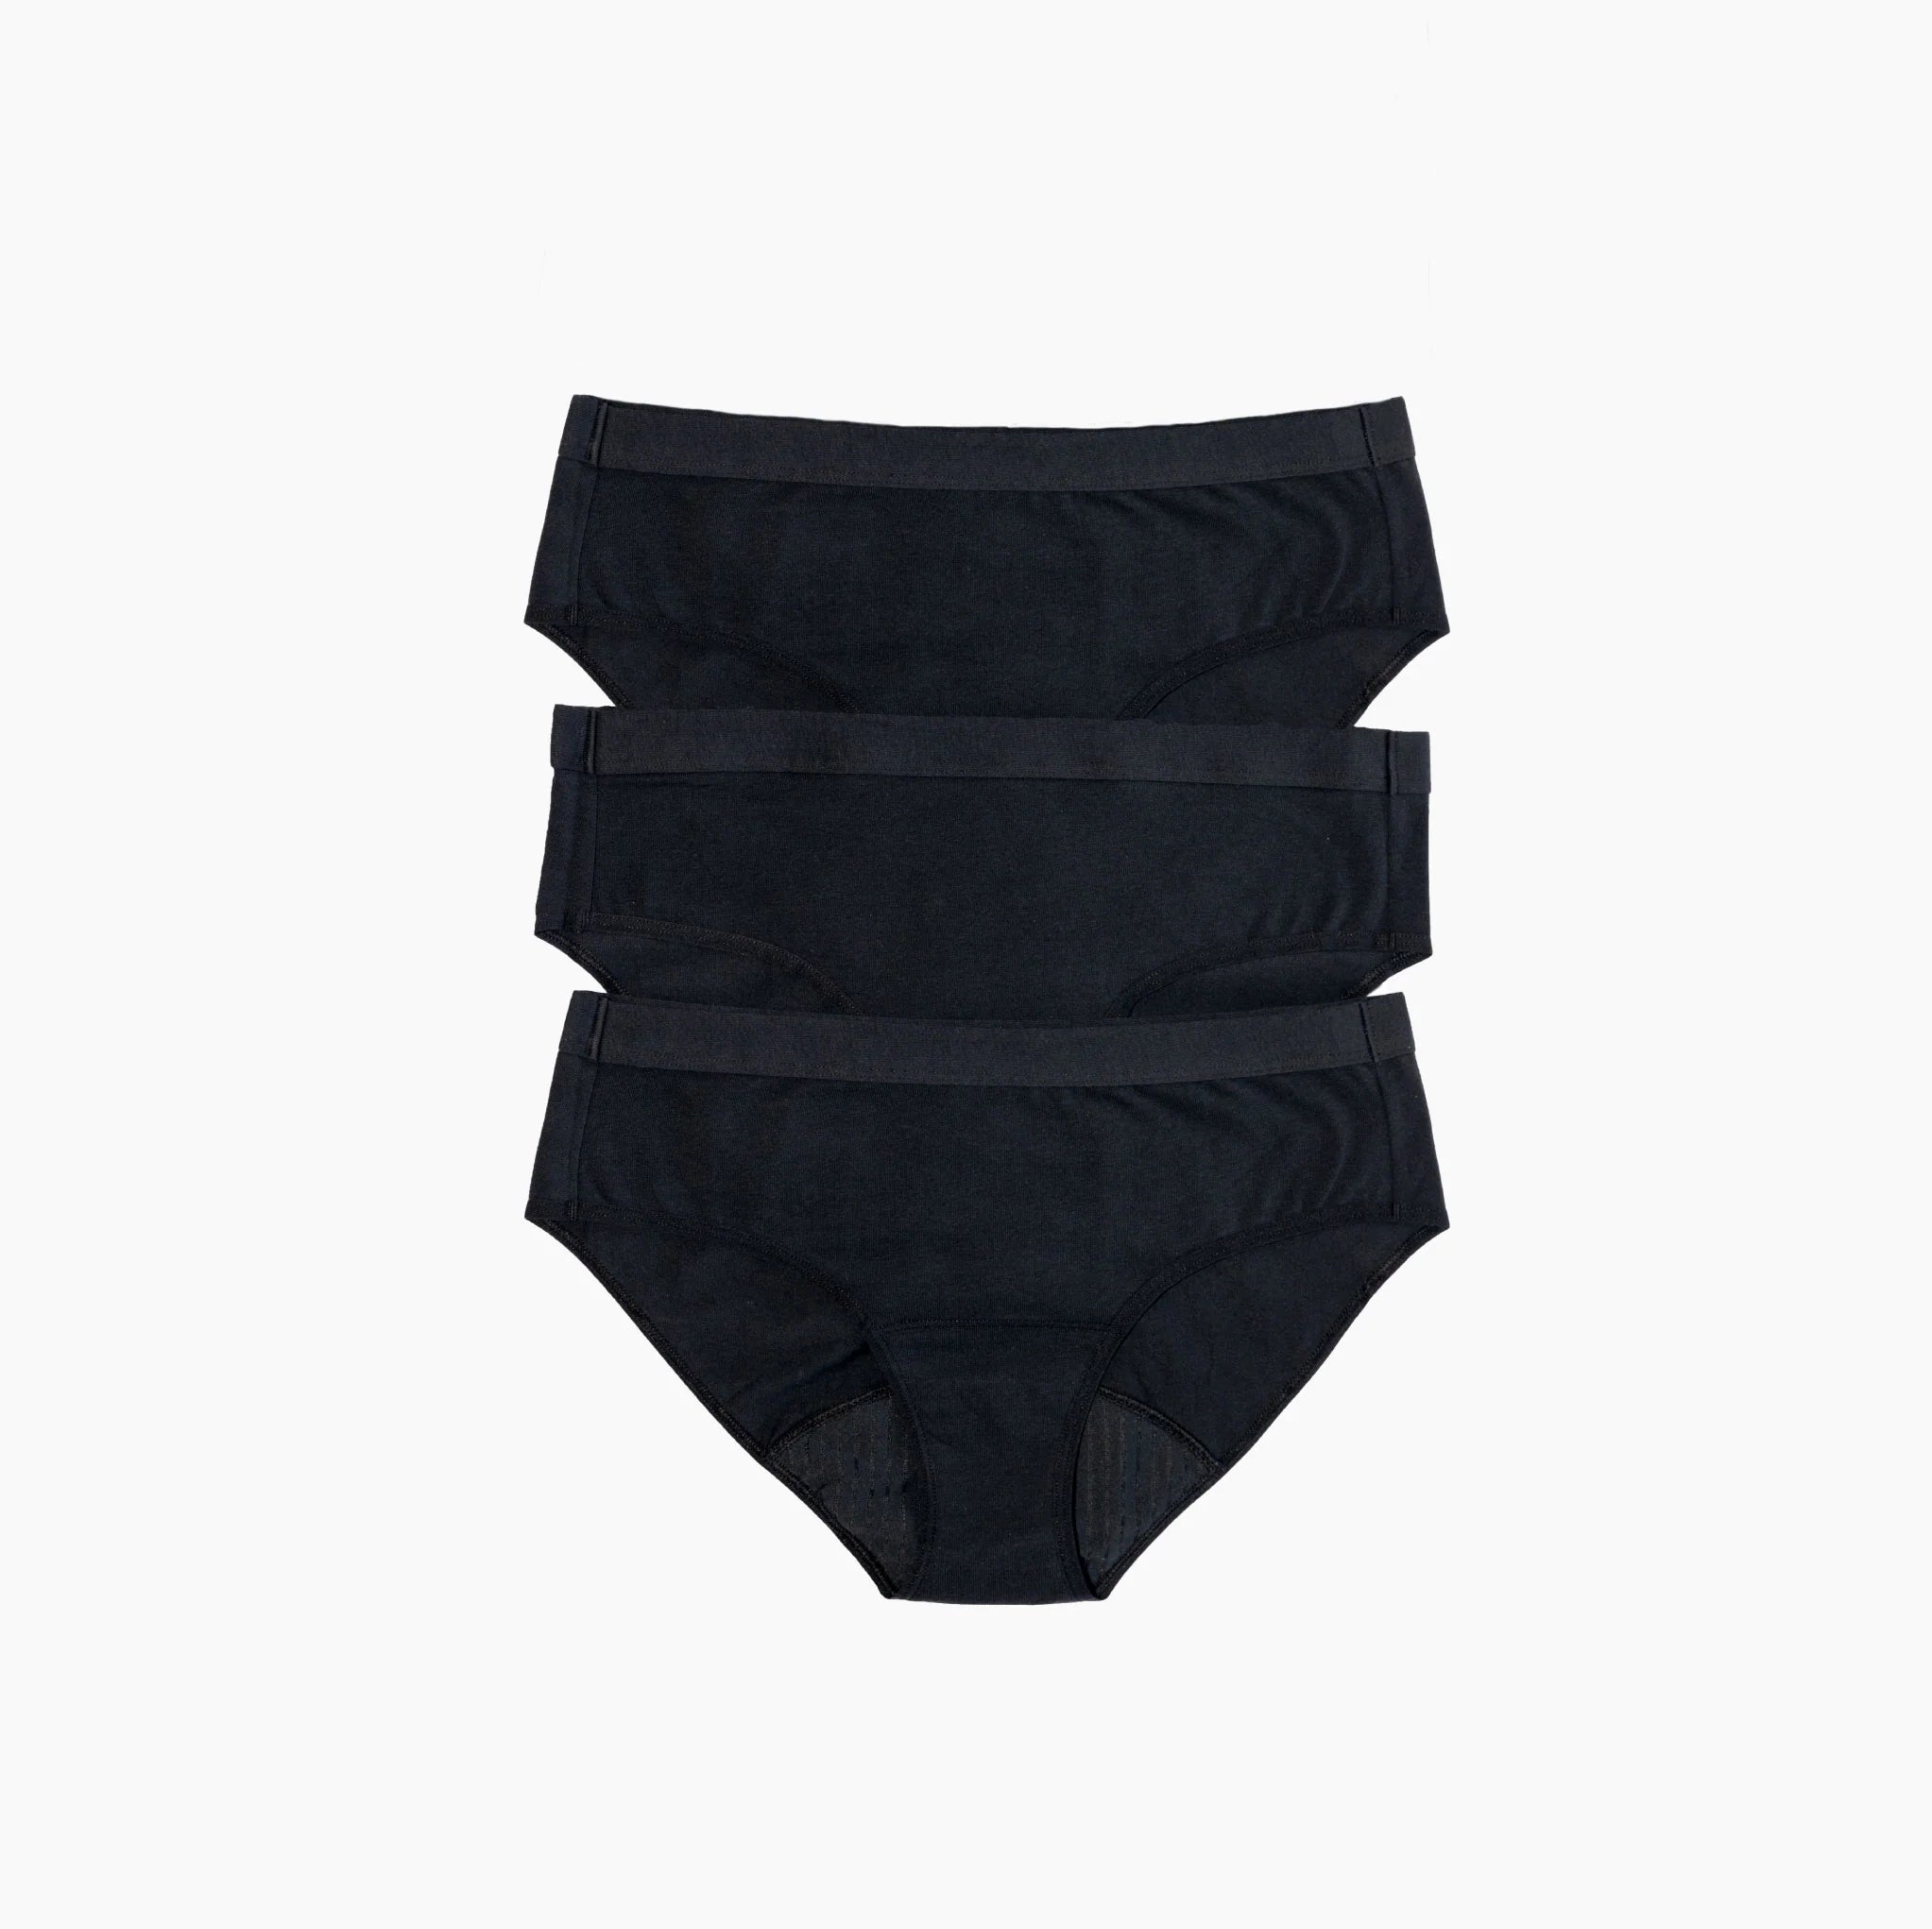 SaaltWear Cotton Brief Black | period underwear | The Green Collective SG